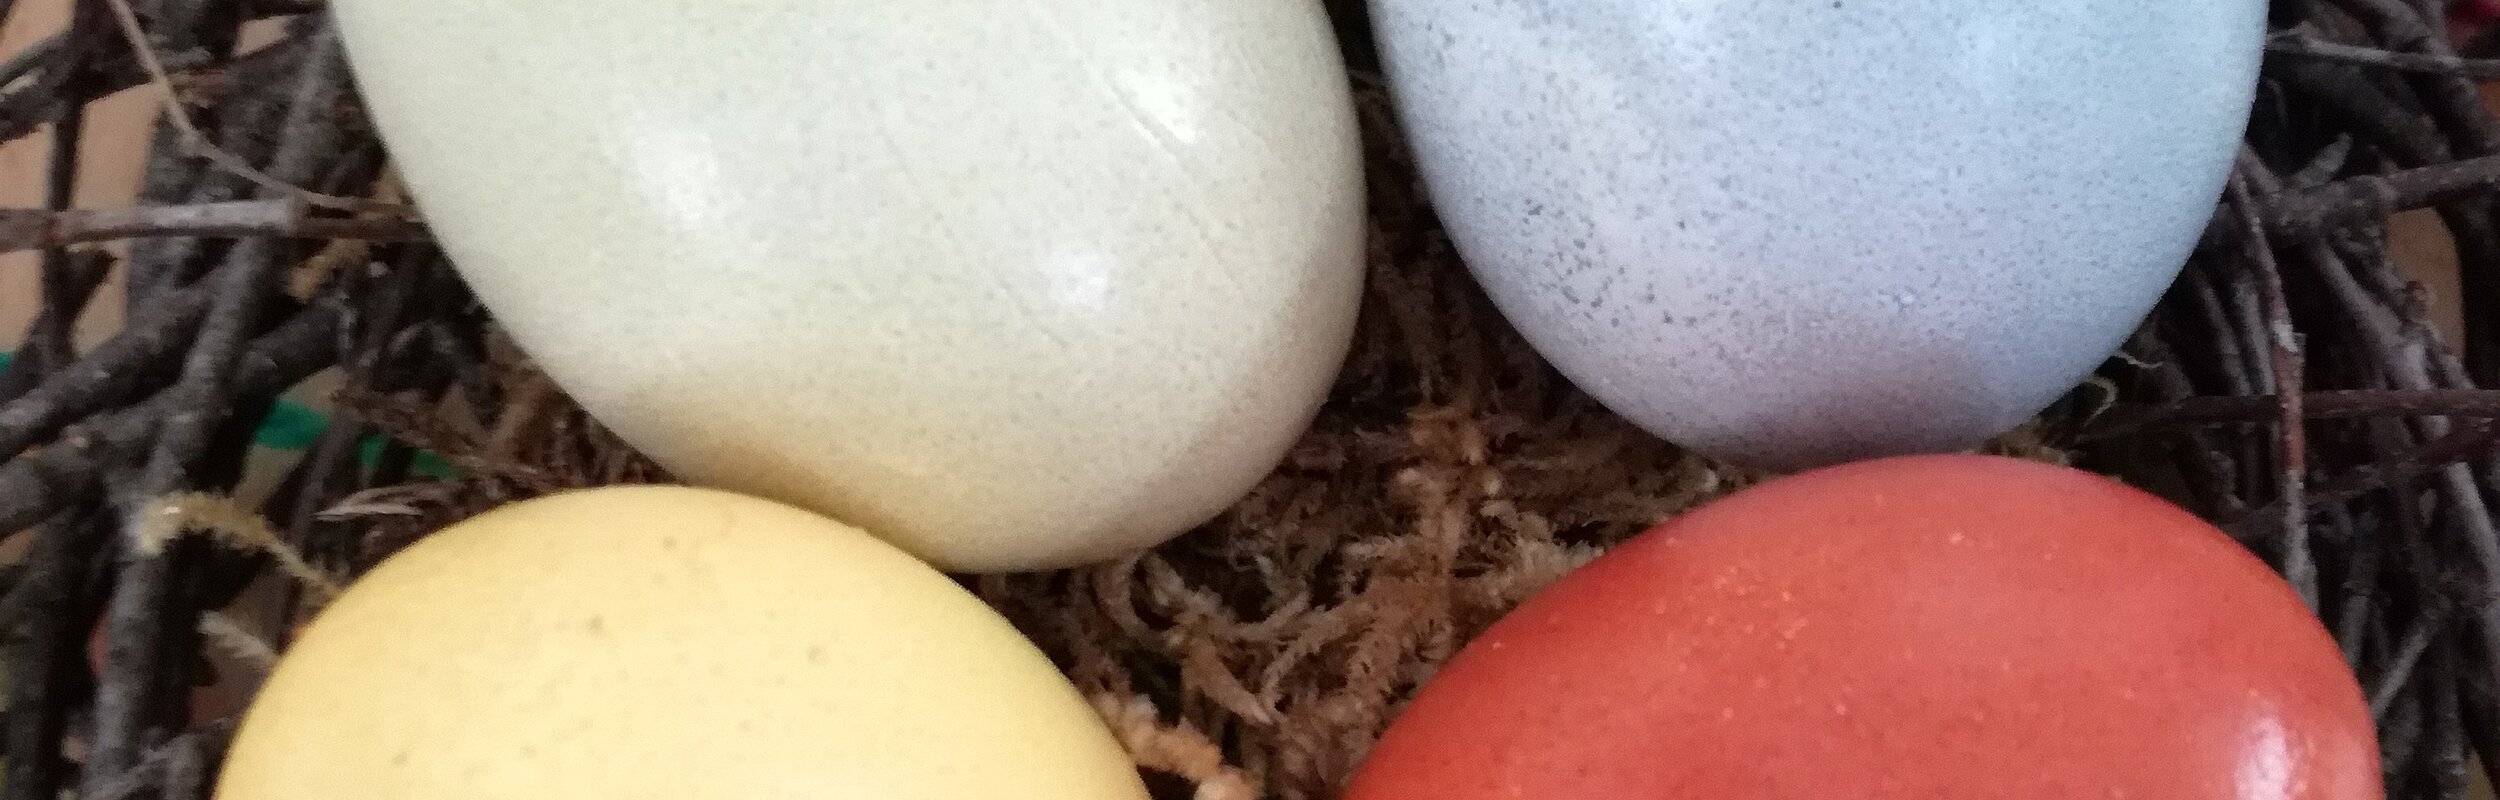 Eier färben - Nest